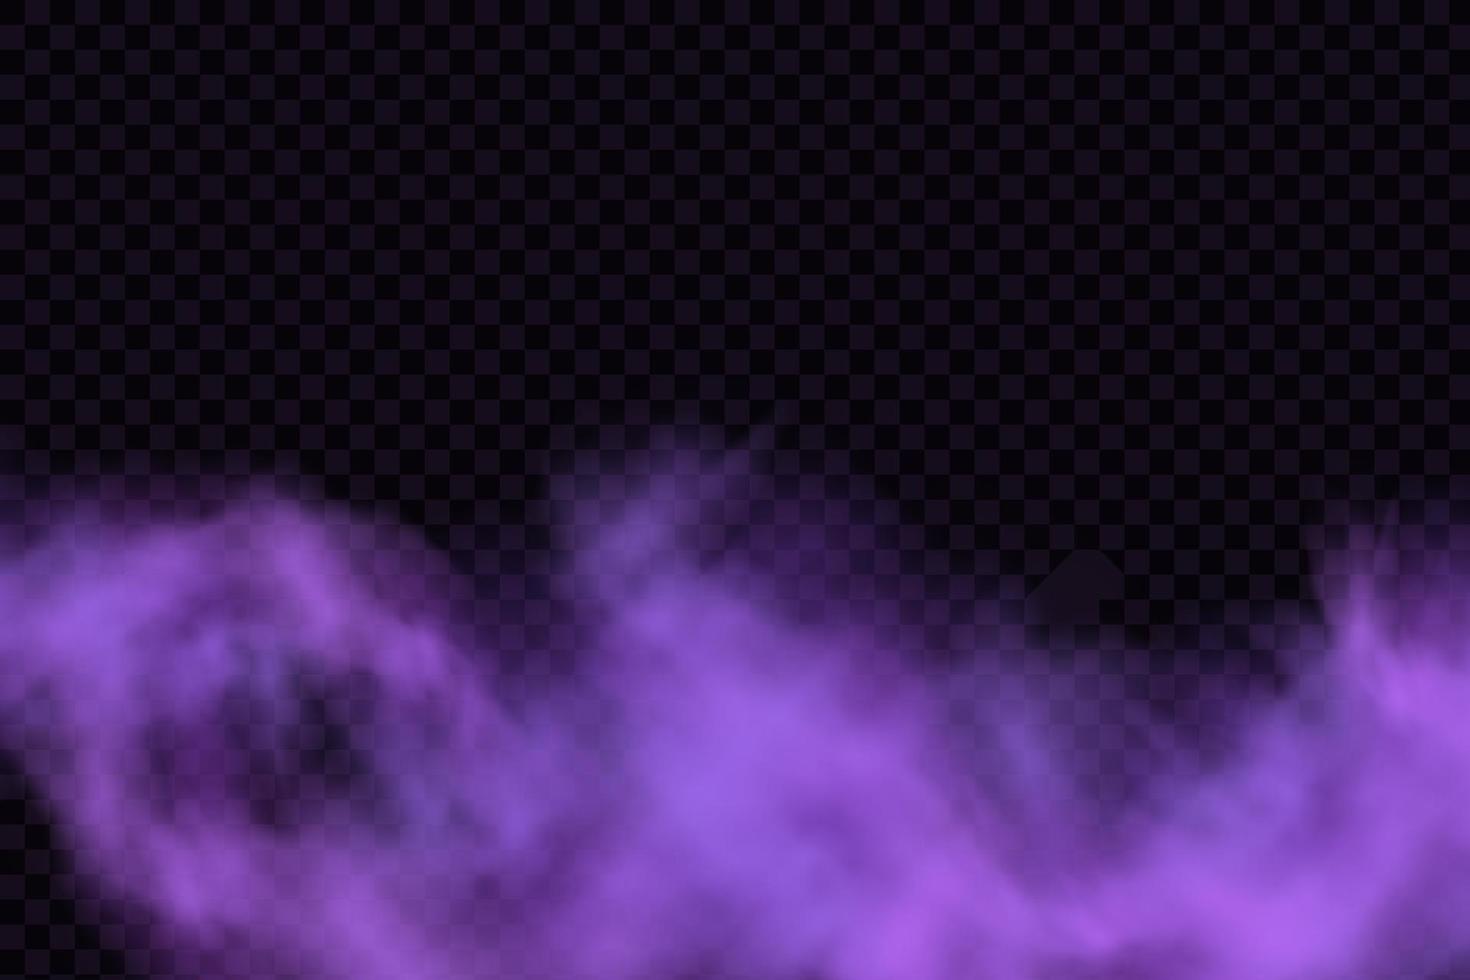 niebla mística aterradora realista en la noche de halloween. gas venenoso púrpura, efecto de polvo y humo. vector